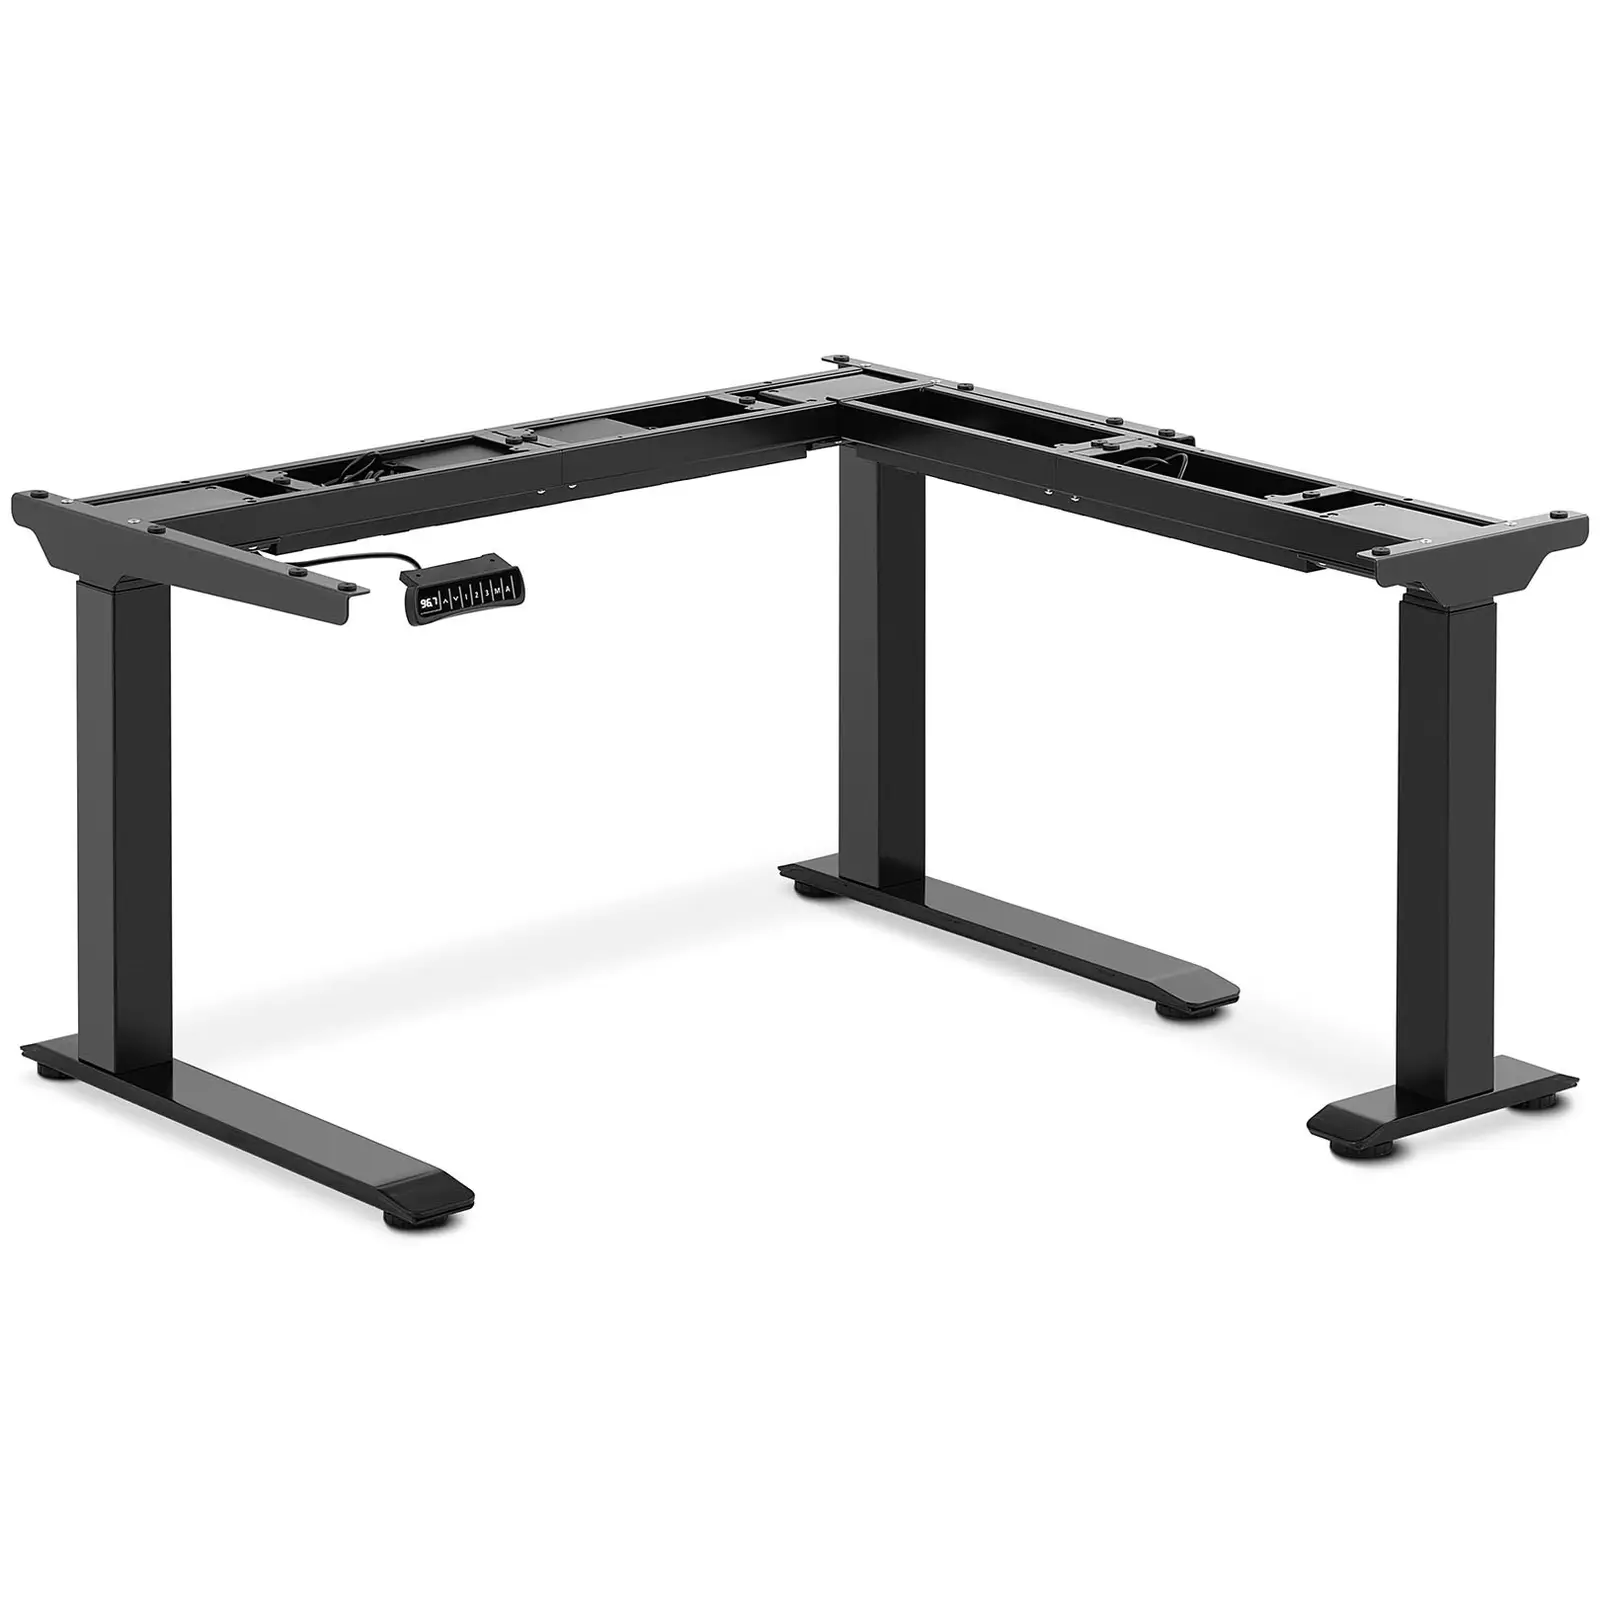 Adjustable Corner Desk Frame - Height: 60-125 cm - Width: 110-190 cm (left) / 110-190 cm (right) - Angle: 90 ° - 150 kg